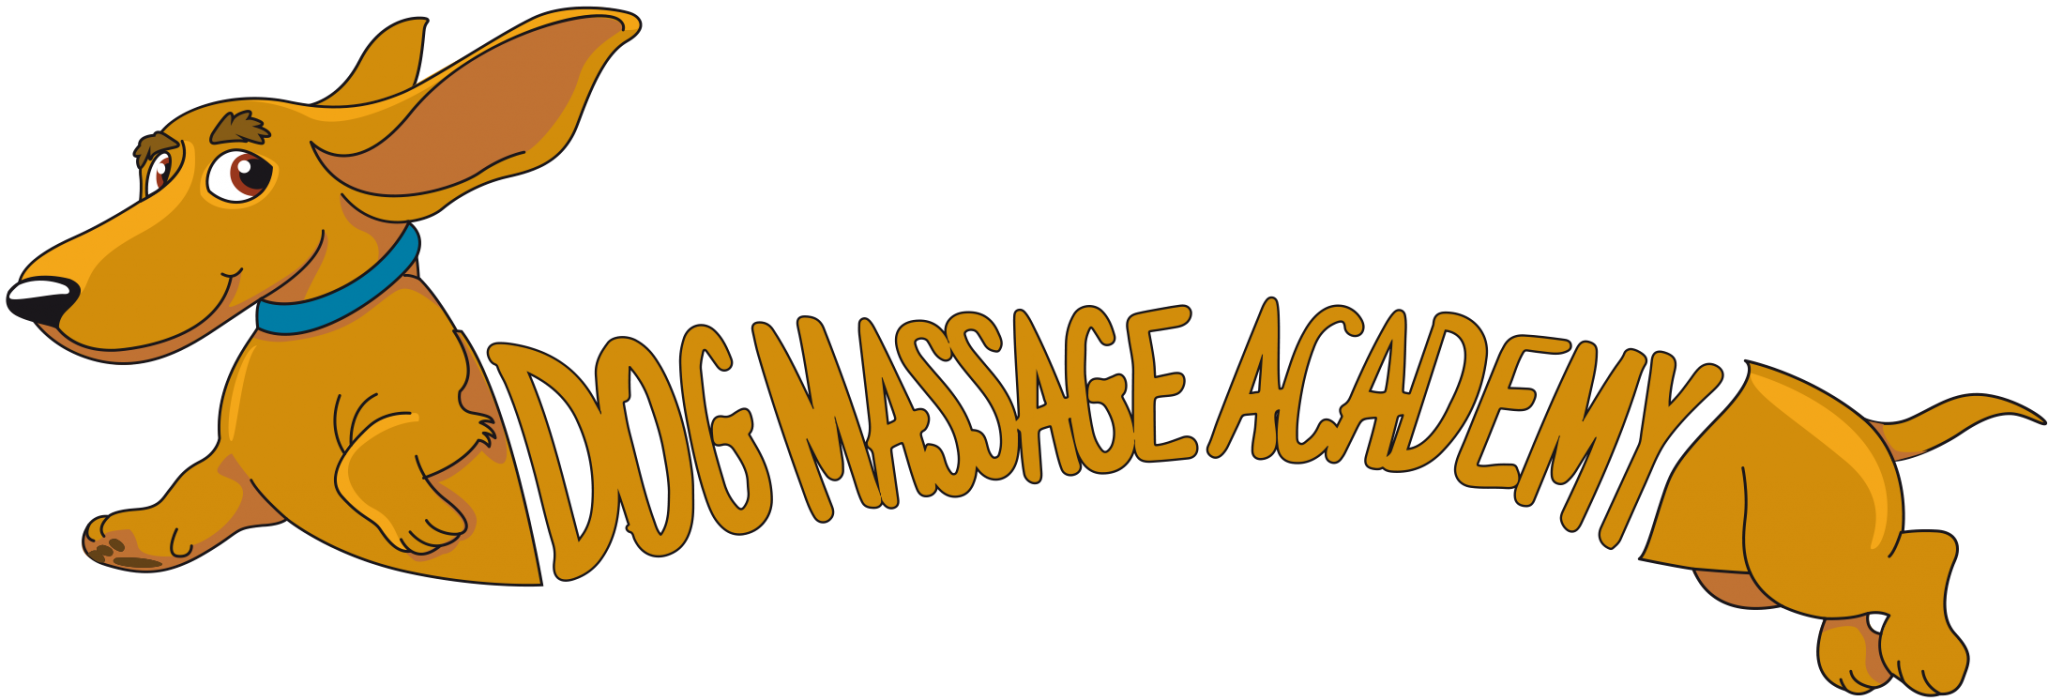 Dog Massage Academy